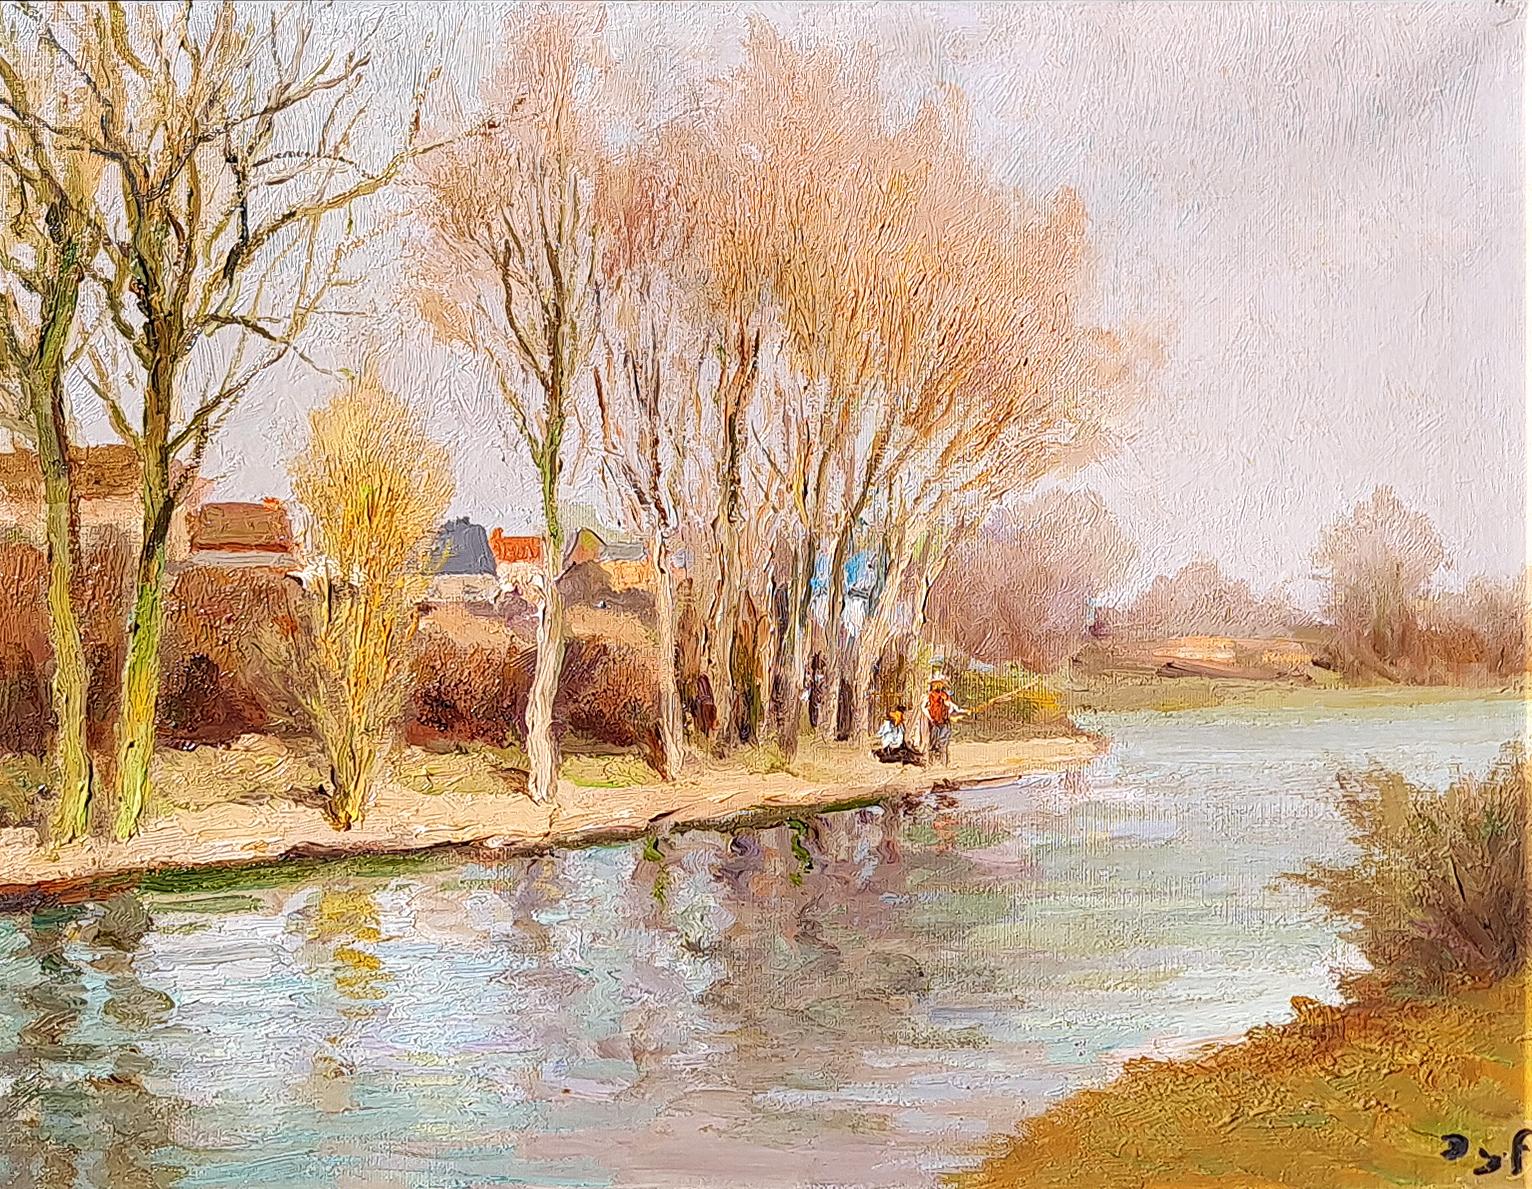 Pêche le long de la Rivière - Painting by Marcel Dyf